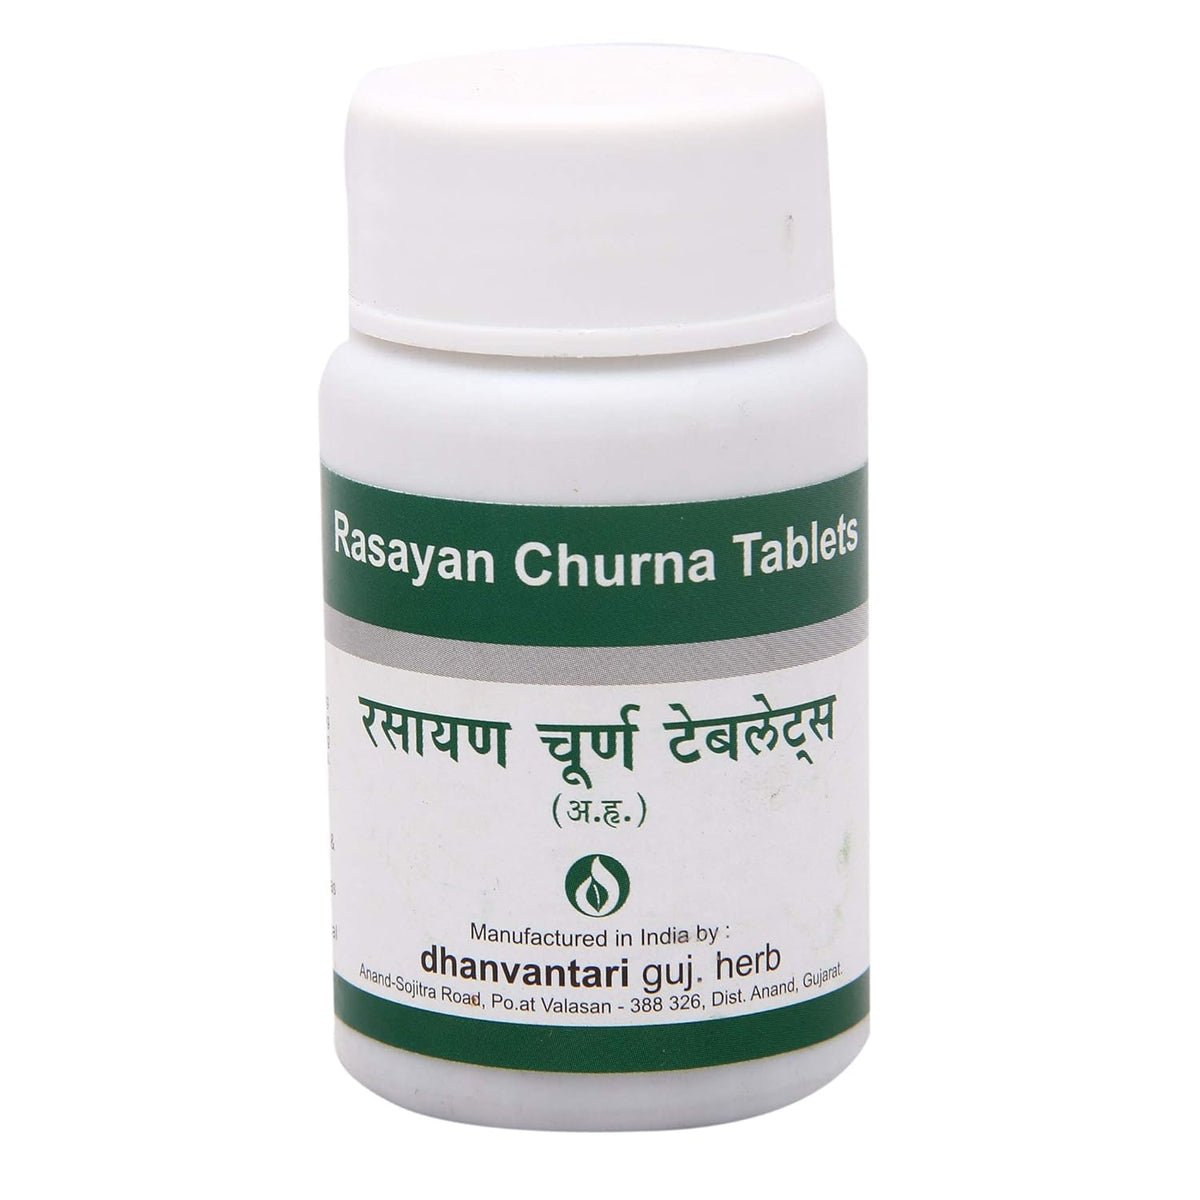 Dhanvantari Ayurvedic Rasayan Churna, nützlich bei Harnproblemen und allgemeines Stärkungsmittel